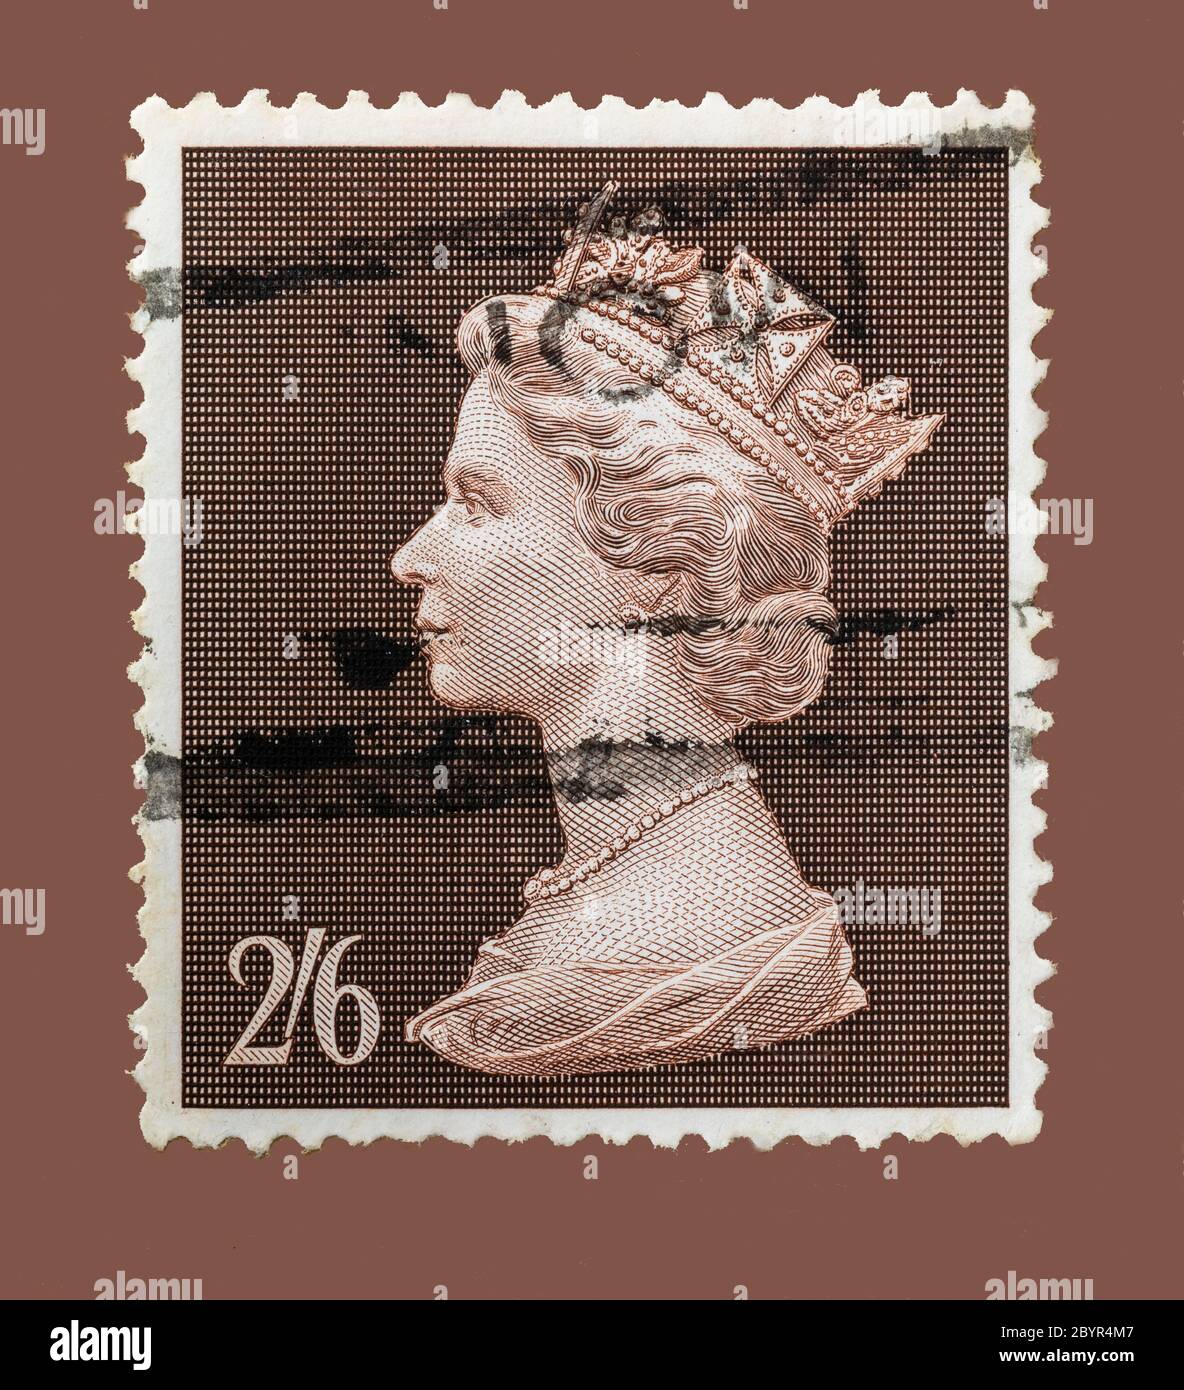 Vintage annullato francobollo dal Regno Unito circa 1969. Valore nominale 2 scellini e sessantuno o mezza corona. Abbastanza chiaro che mostra la regina Elisabetta. Foto Stock